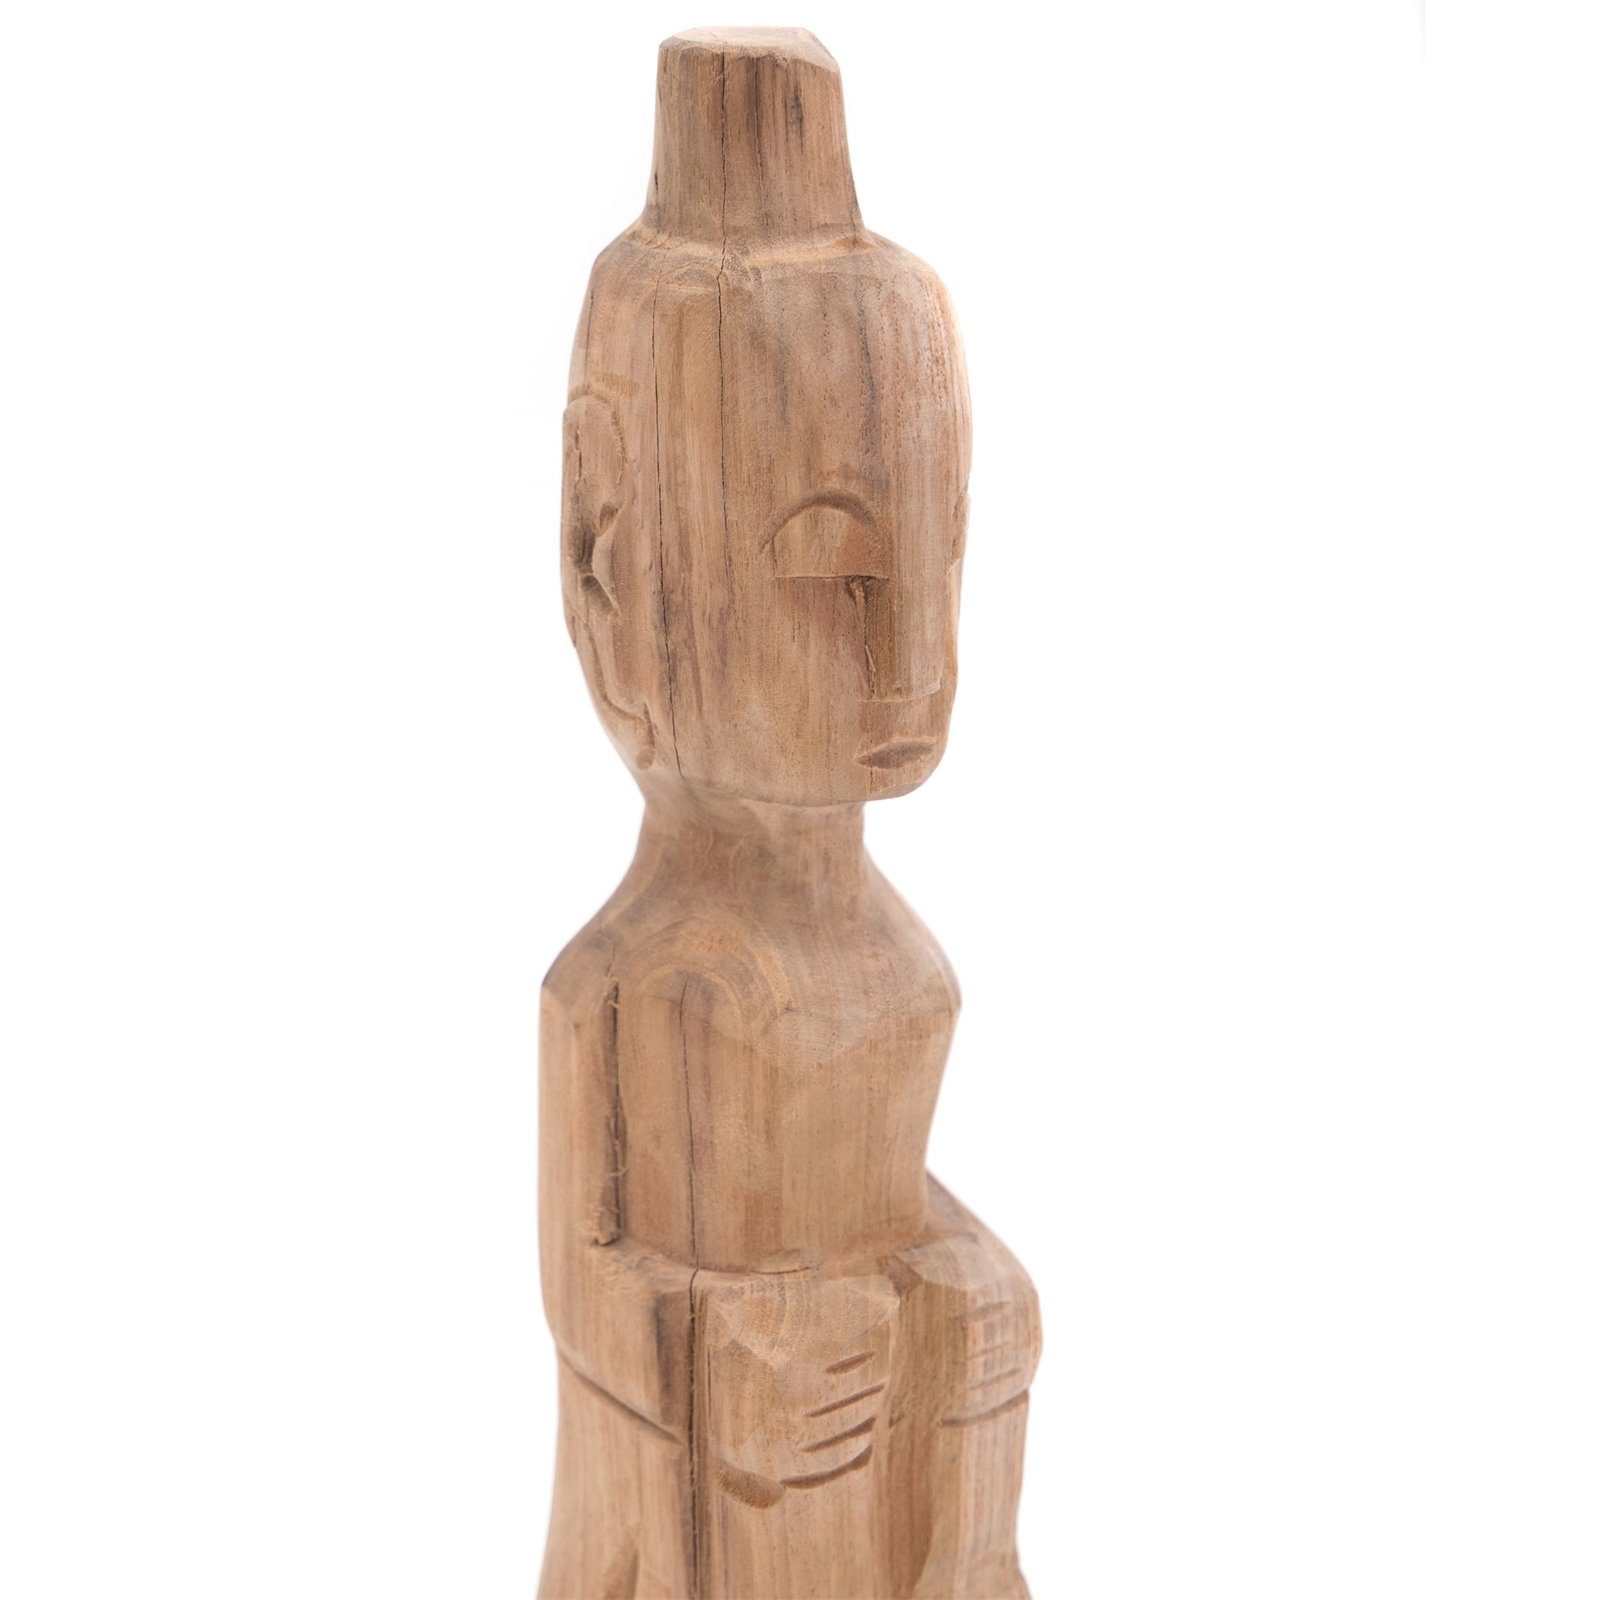 CREEDWOOD Skulptur TEAK Teakholz, FIGUR Holz MIT HUT Figur II", "PRIMITIVO